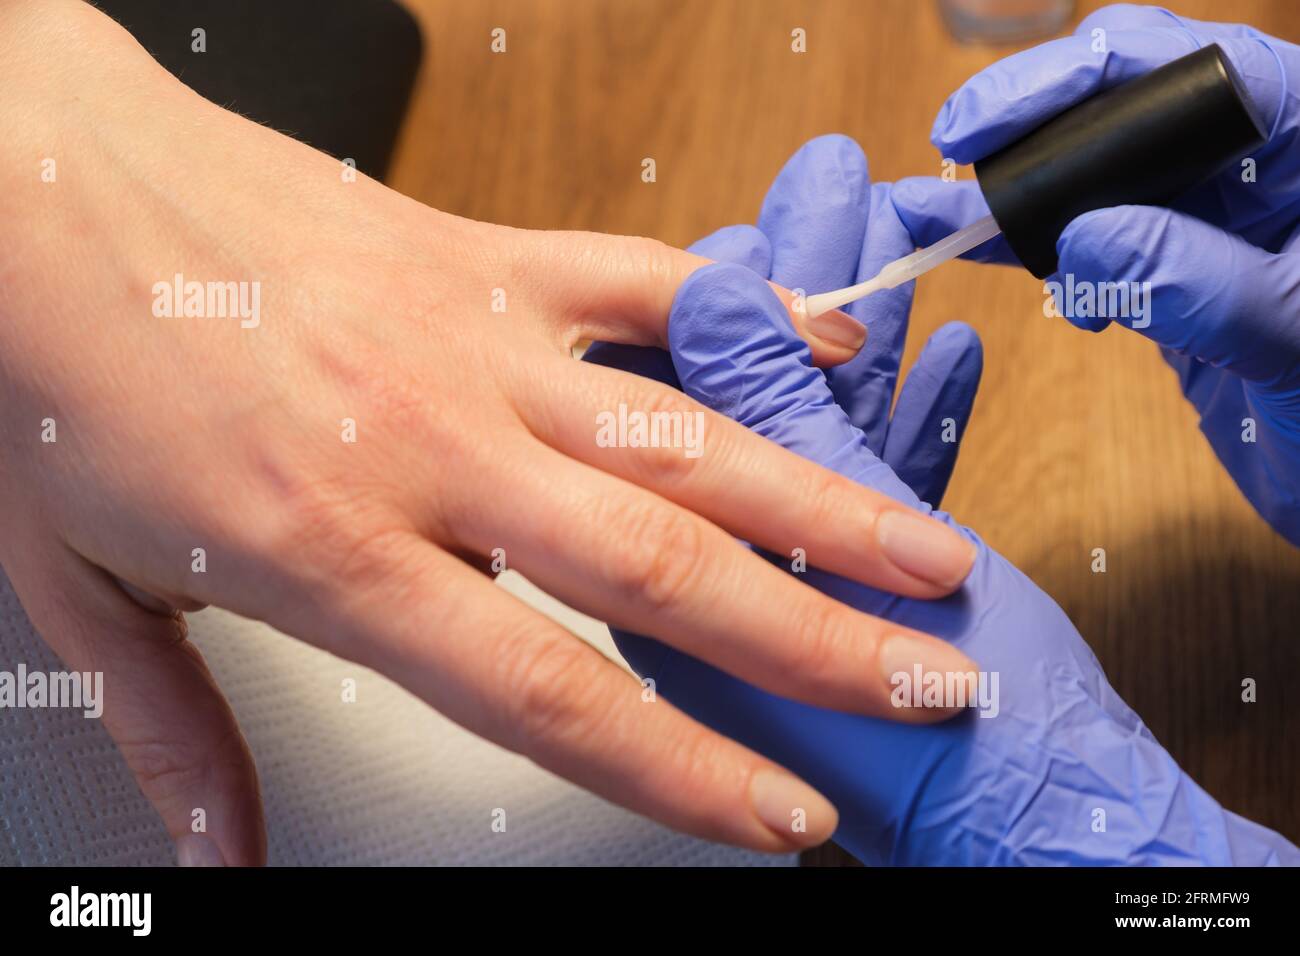 Hände eines Manikuristen in schützenden medizinischen Handschuhen beim Auftragen des Nagellacks. Prävention und Schutz vor Viren und Bakterien während des Eingriffs Stockfoto